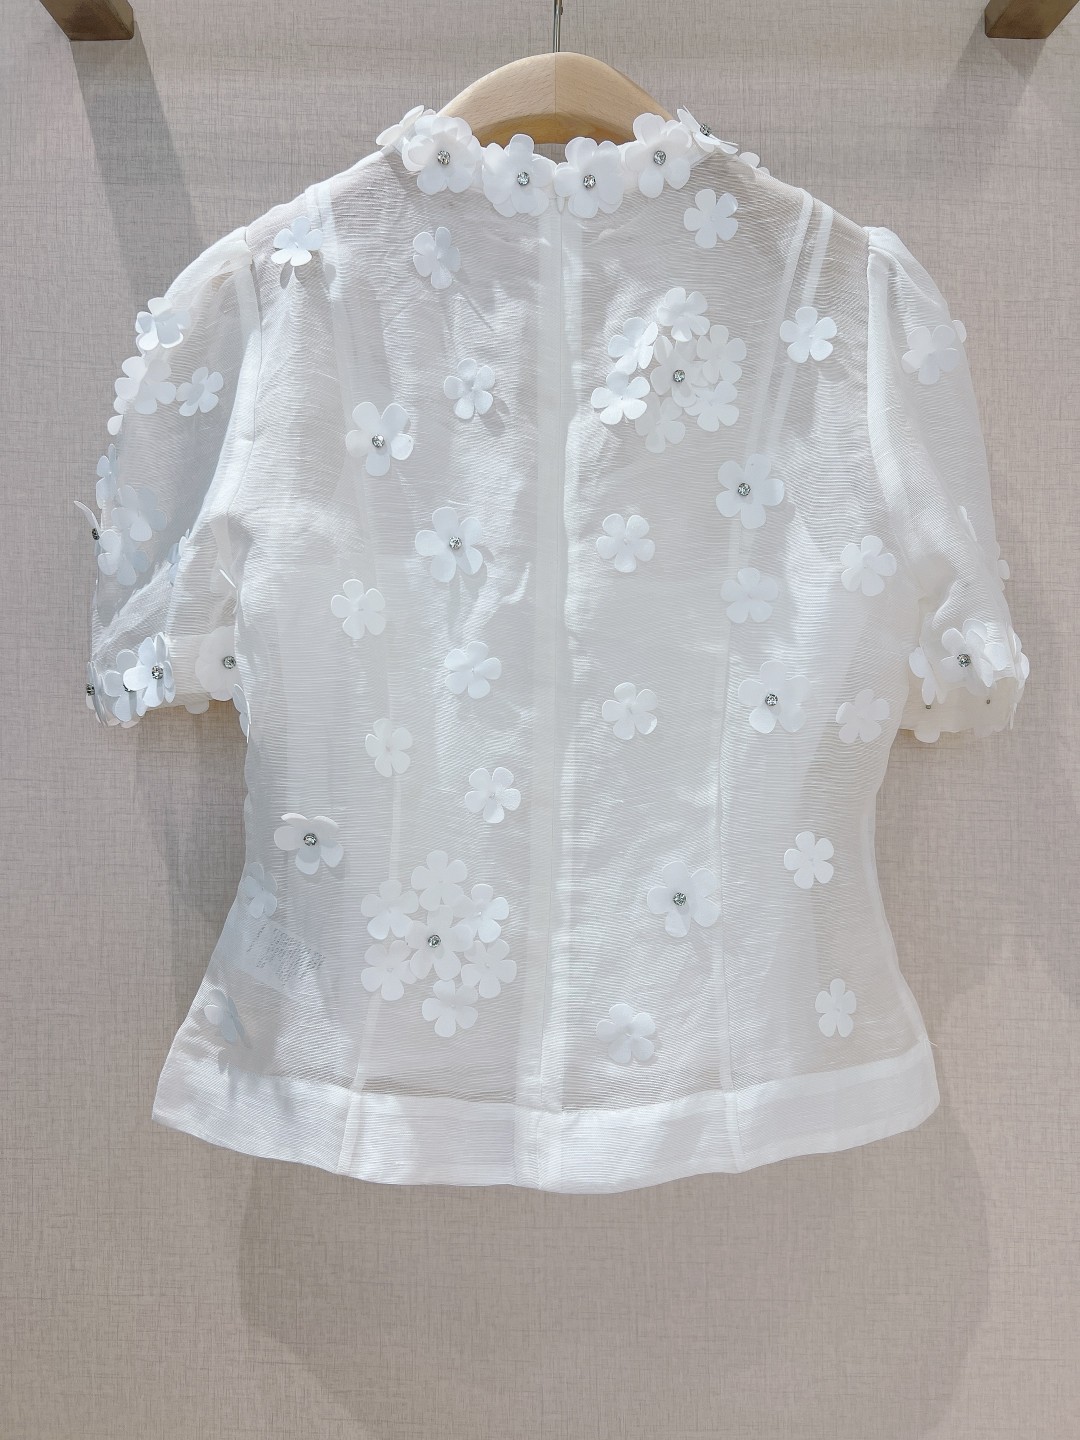 澳洲设计师品牌Zimmerman*n新品丝麻料质地材质上衣饰有精致的3D花朵贴花后背采用隐形拉链设计前后